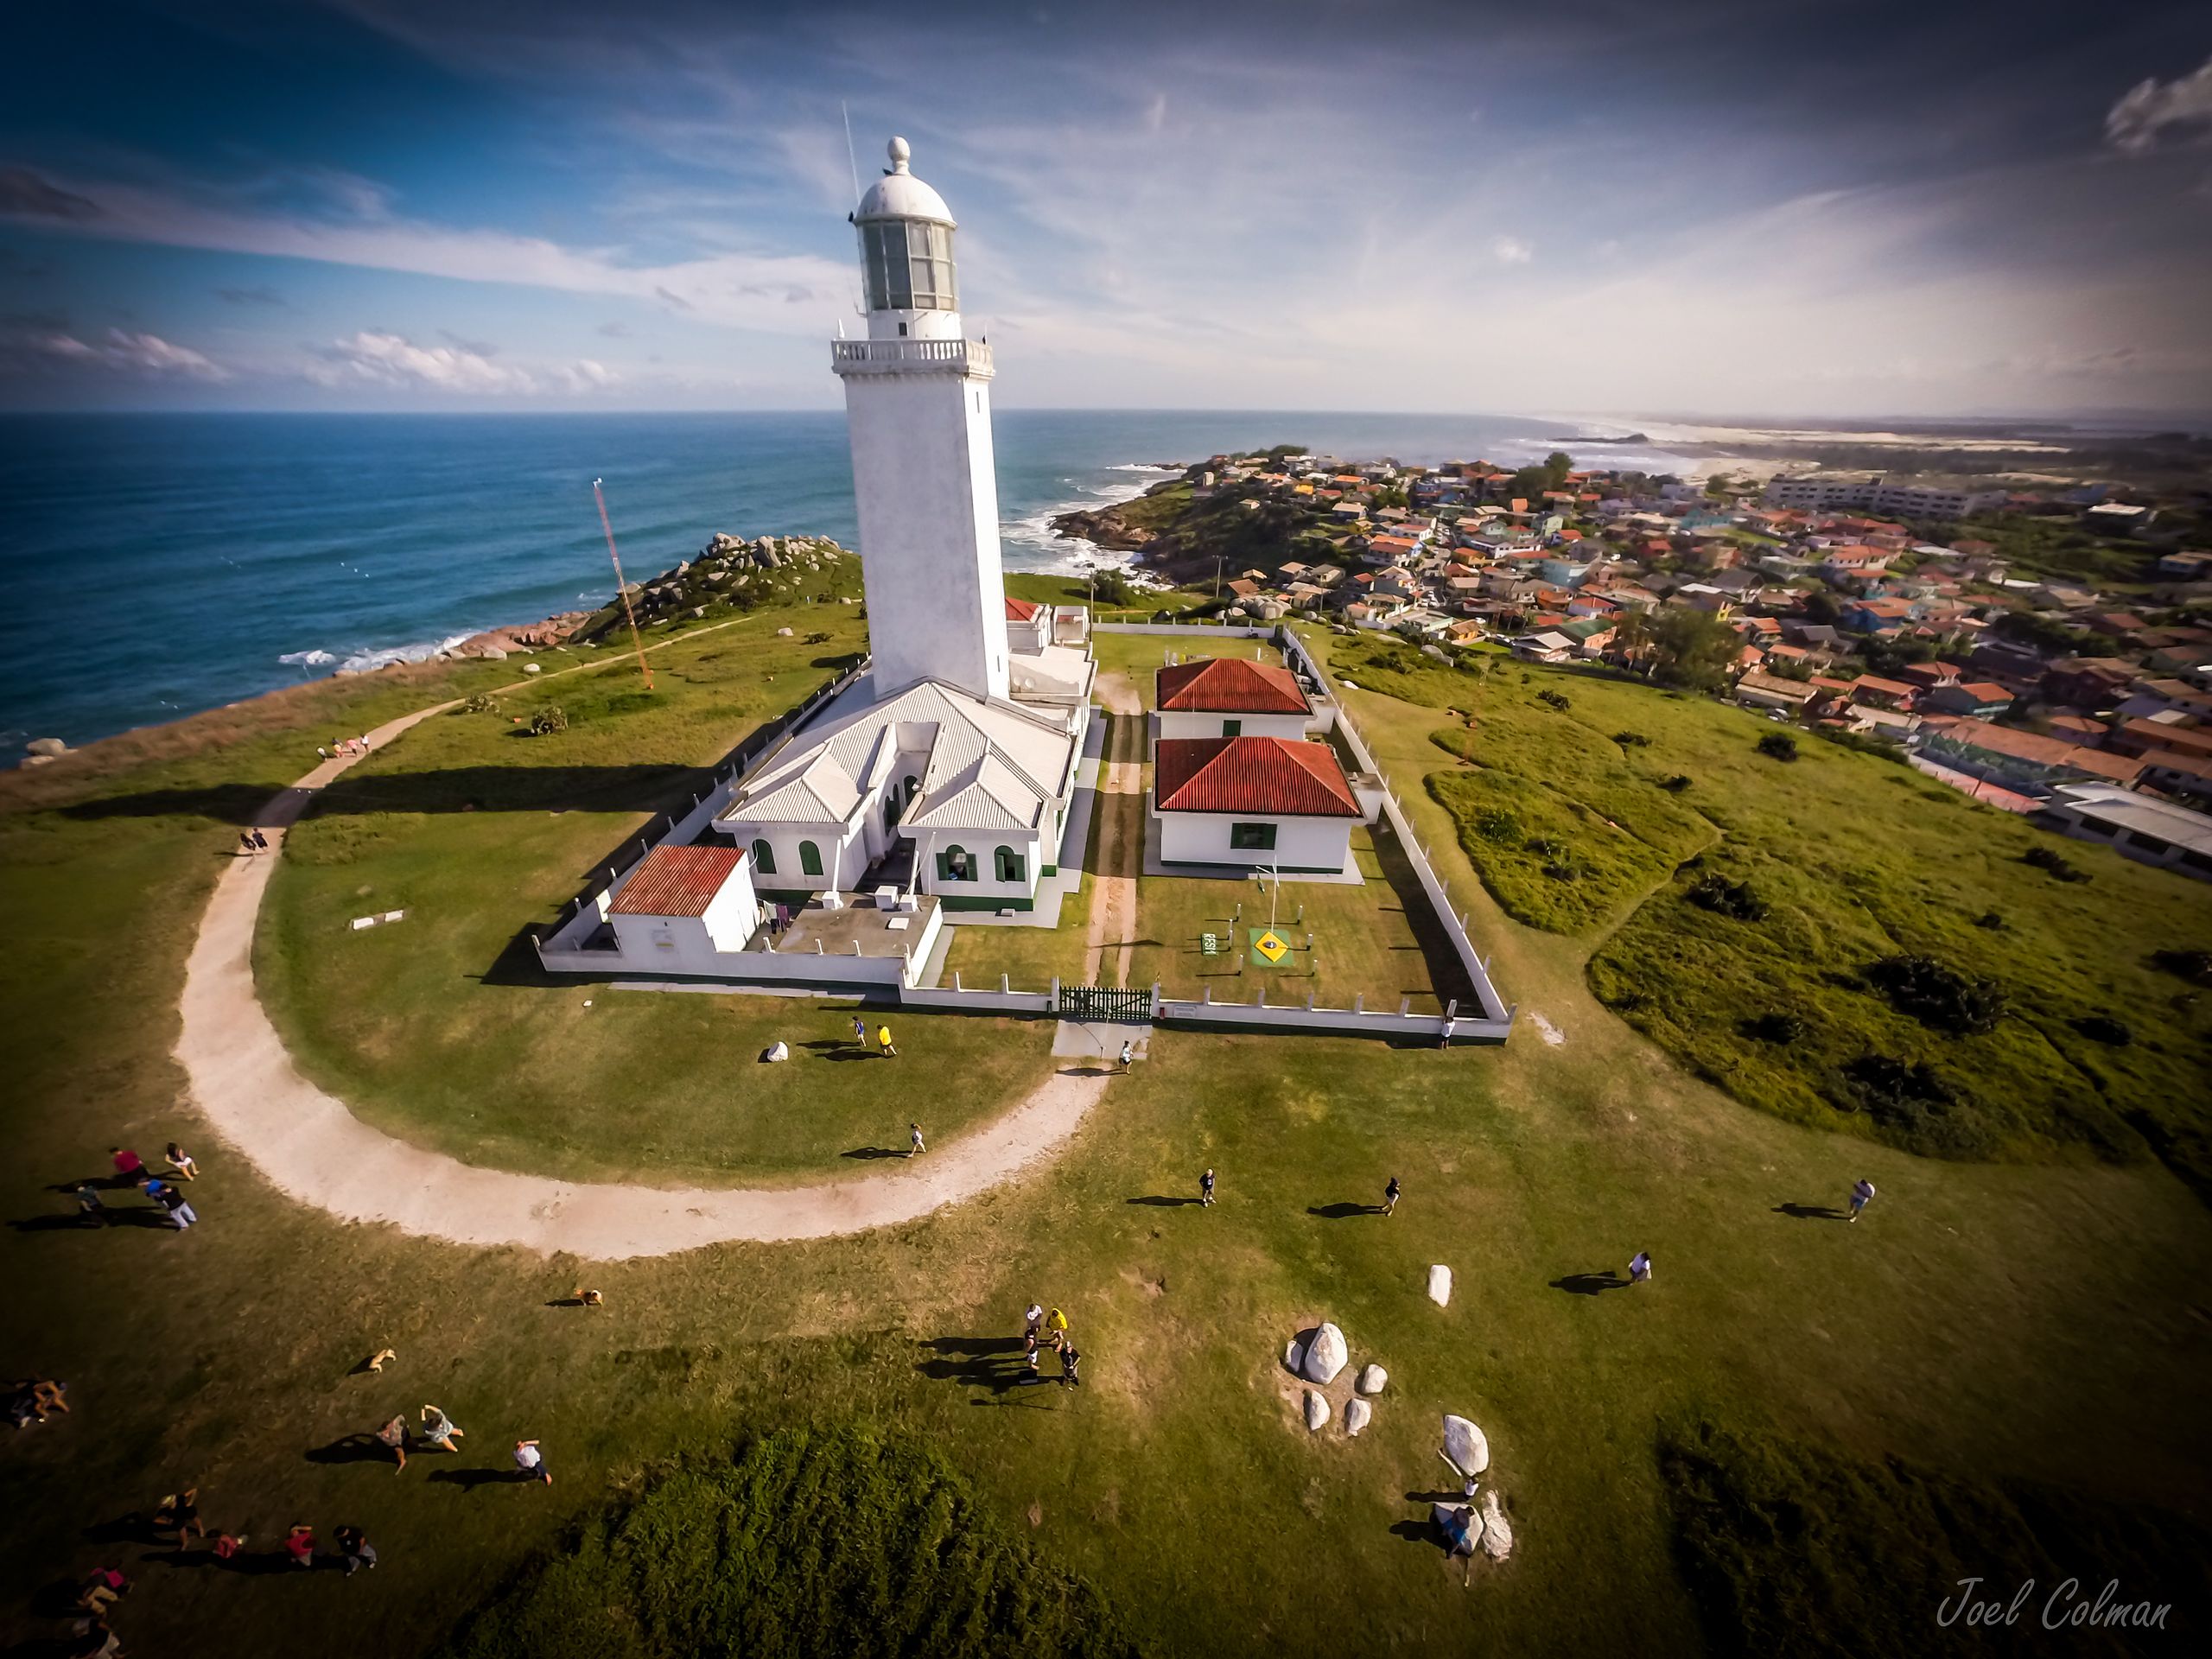 ملف:Santa Marta Lighthouse in Laguna - SanTa Catarina - Brazil.jpg -  ويكيبيديا